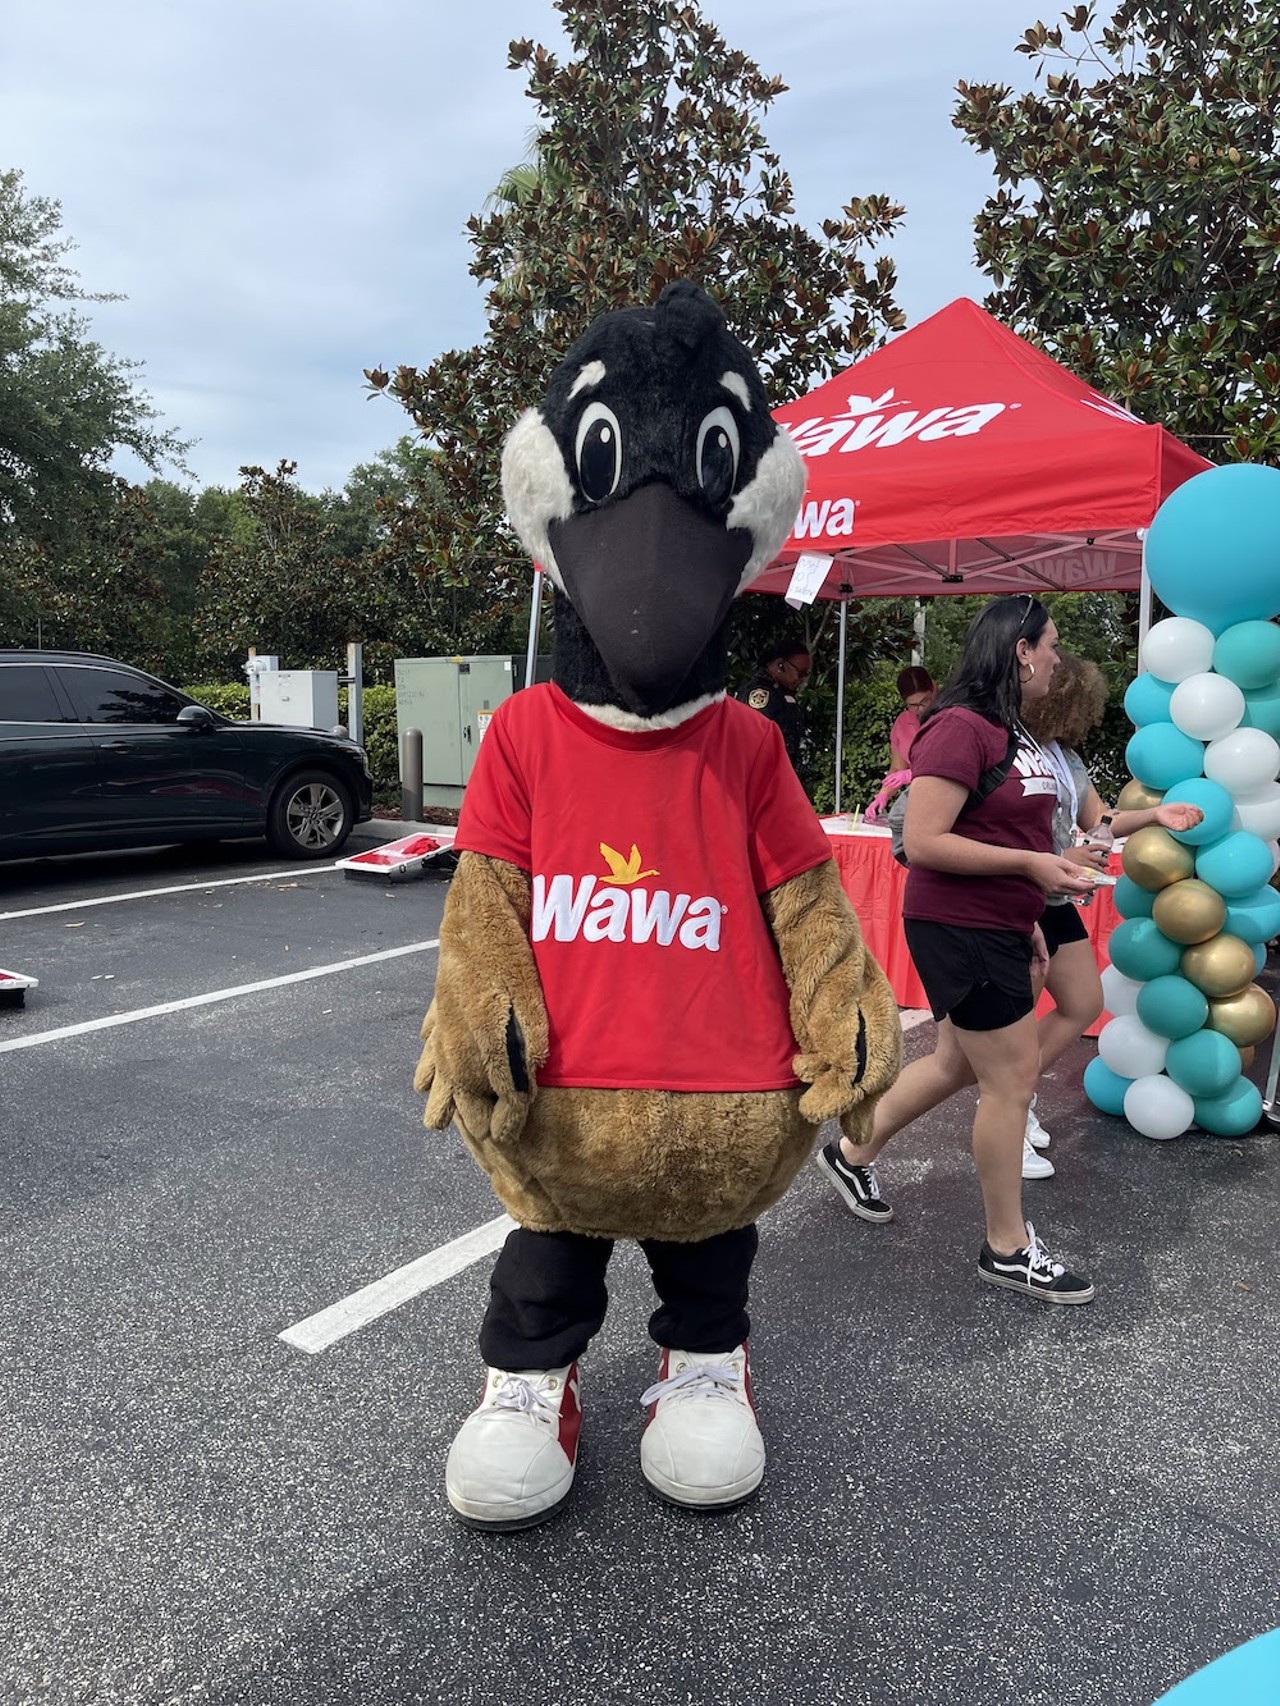 Wawa offers free coffee, fountain sodas to celebrate 10 years in Orlando